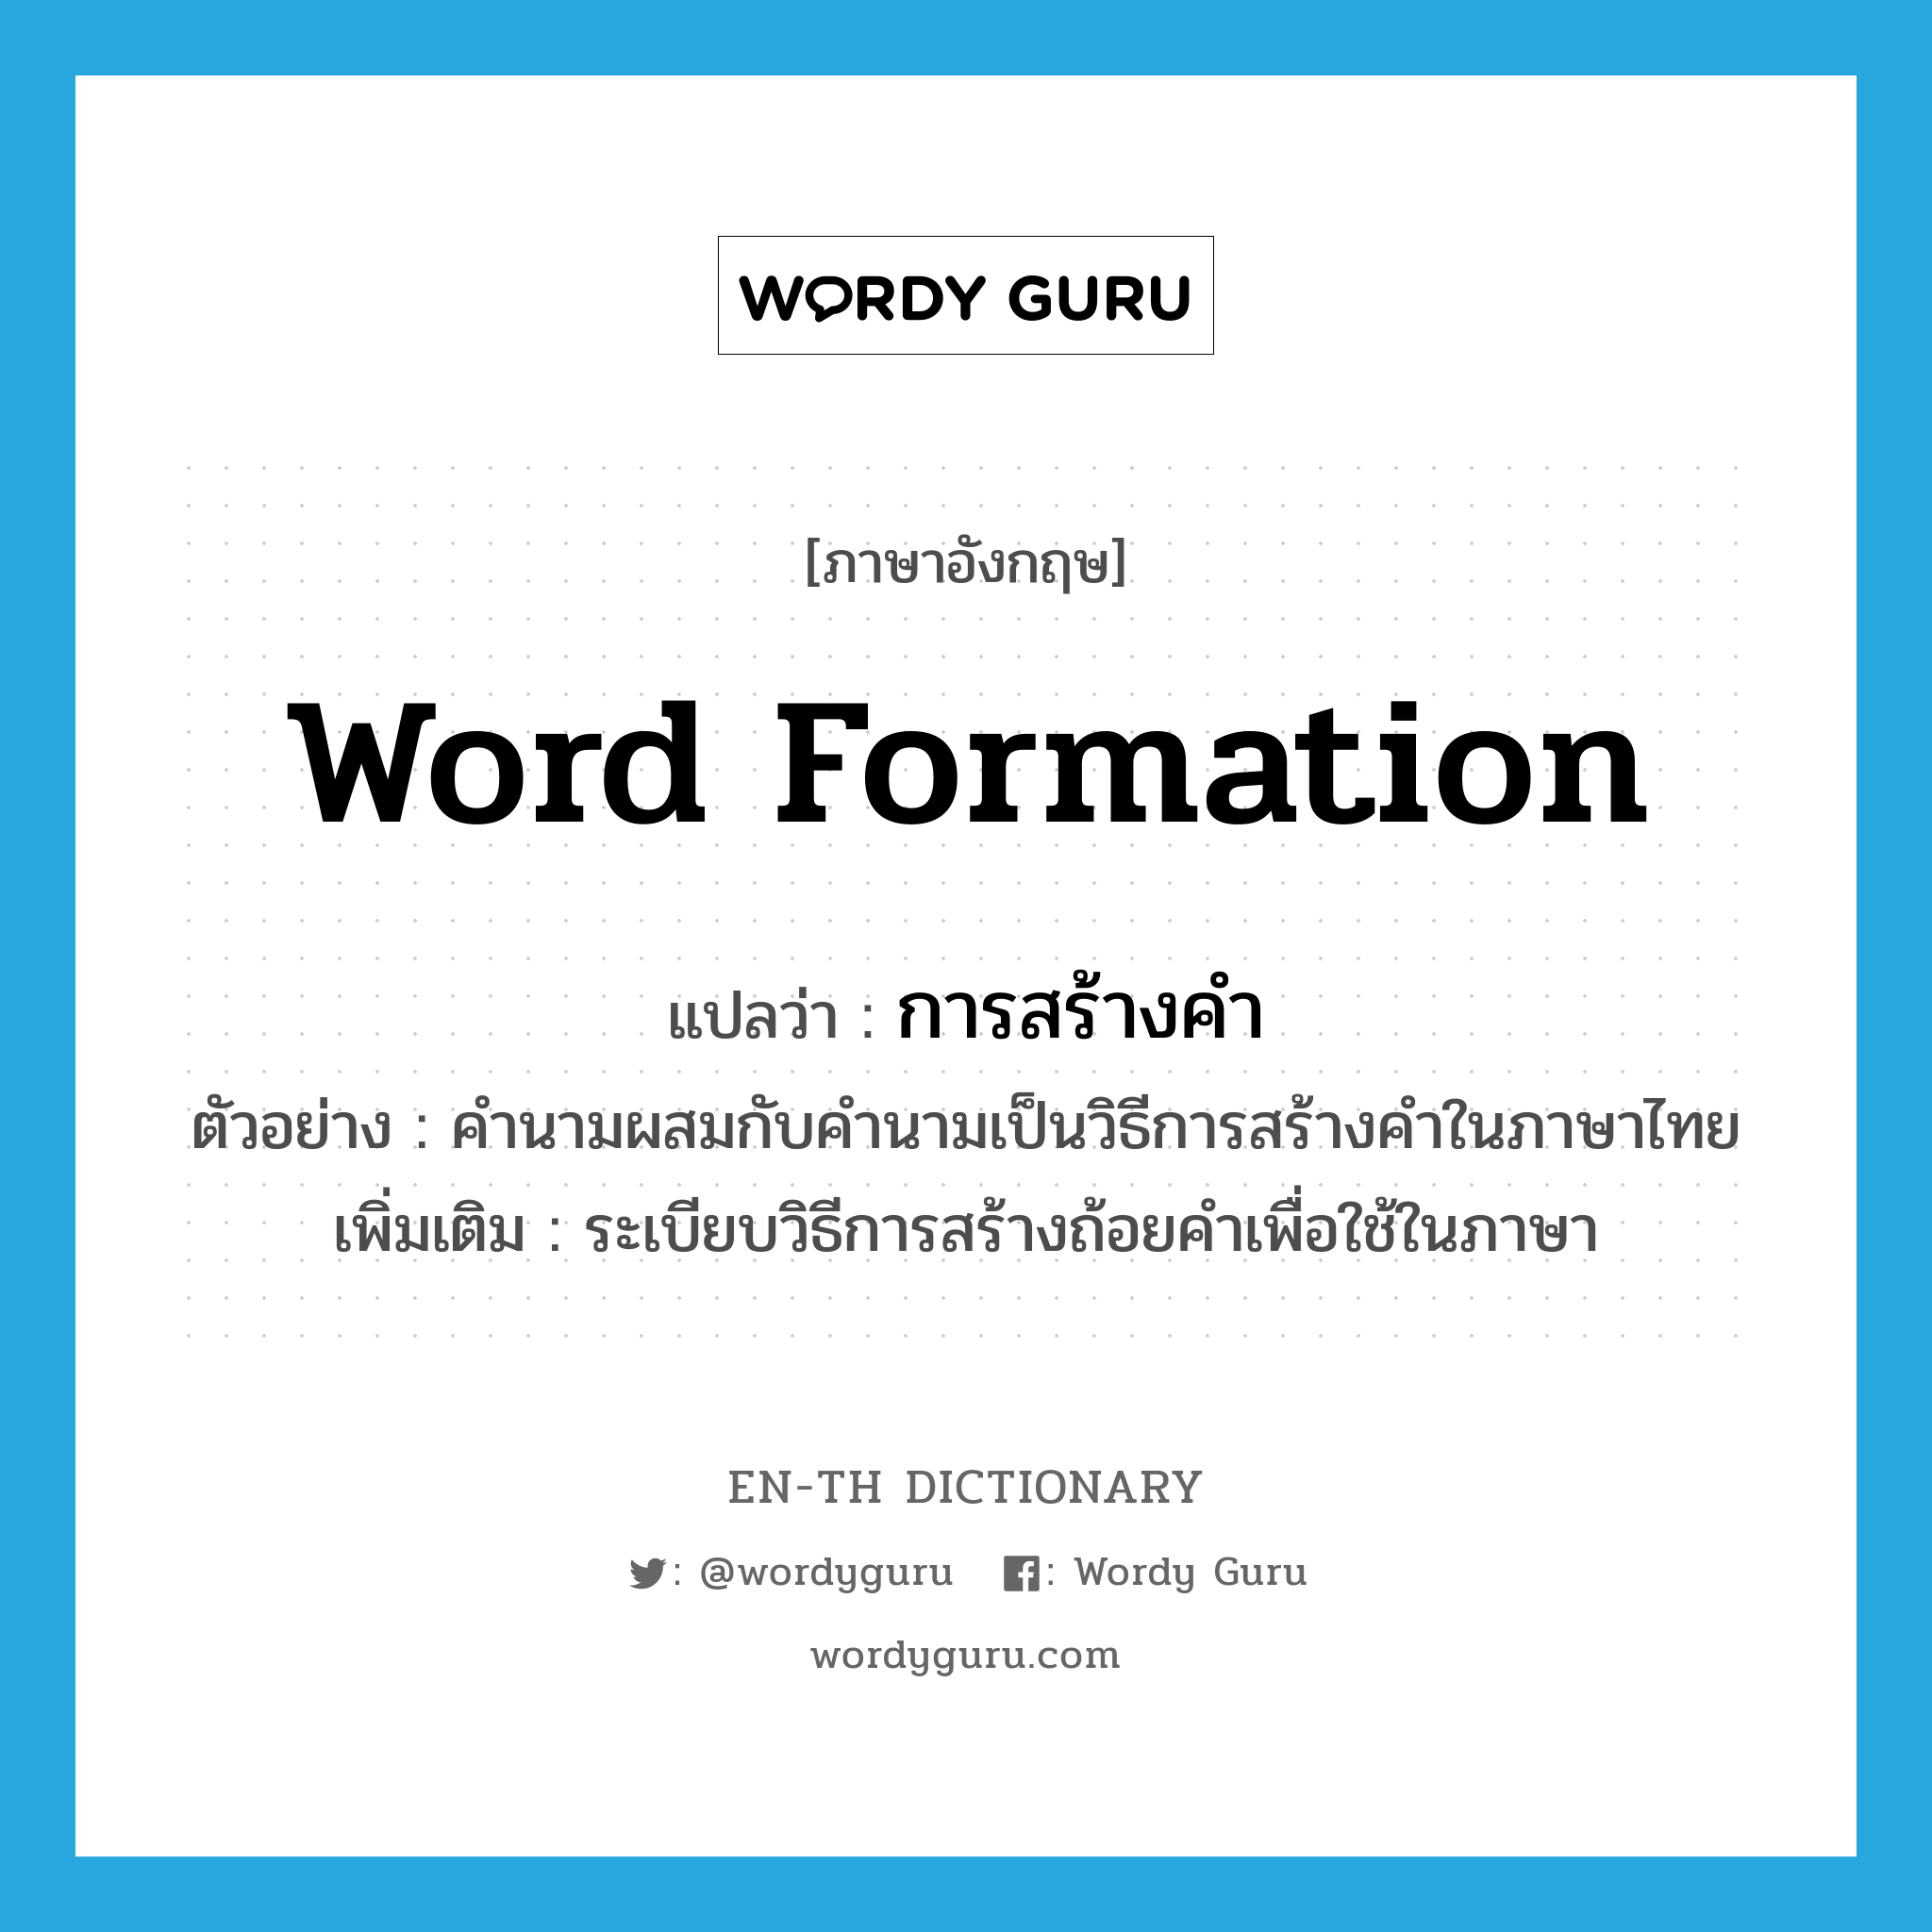 word formation แปลว่า?, คำศัพท์ภาษาอังกฤษ word formation แปลว่า การสร้างคำ ประเภท N ตัวอย่าง คำนามผสมกับคำนามเป็นวิธีการสร้างคำในภาษาไทย เพิ่มเติม ระเบียบวิธีการสร้างถ้อยคำเพื่อใช้ในภาษา หมวด N